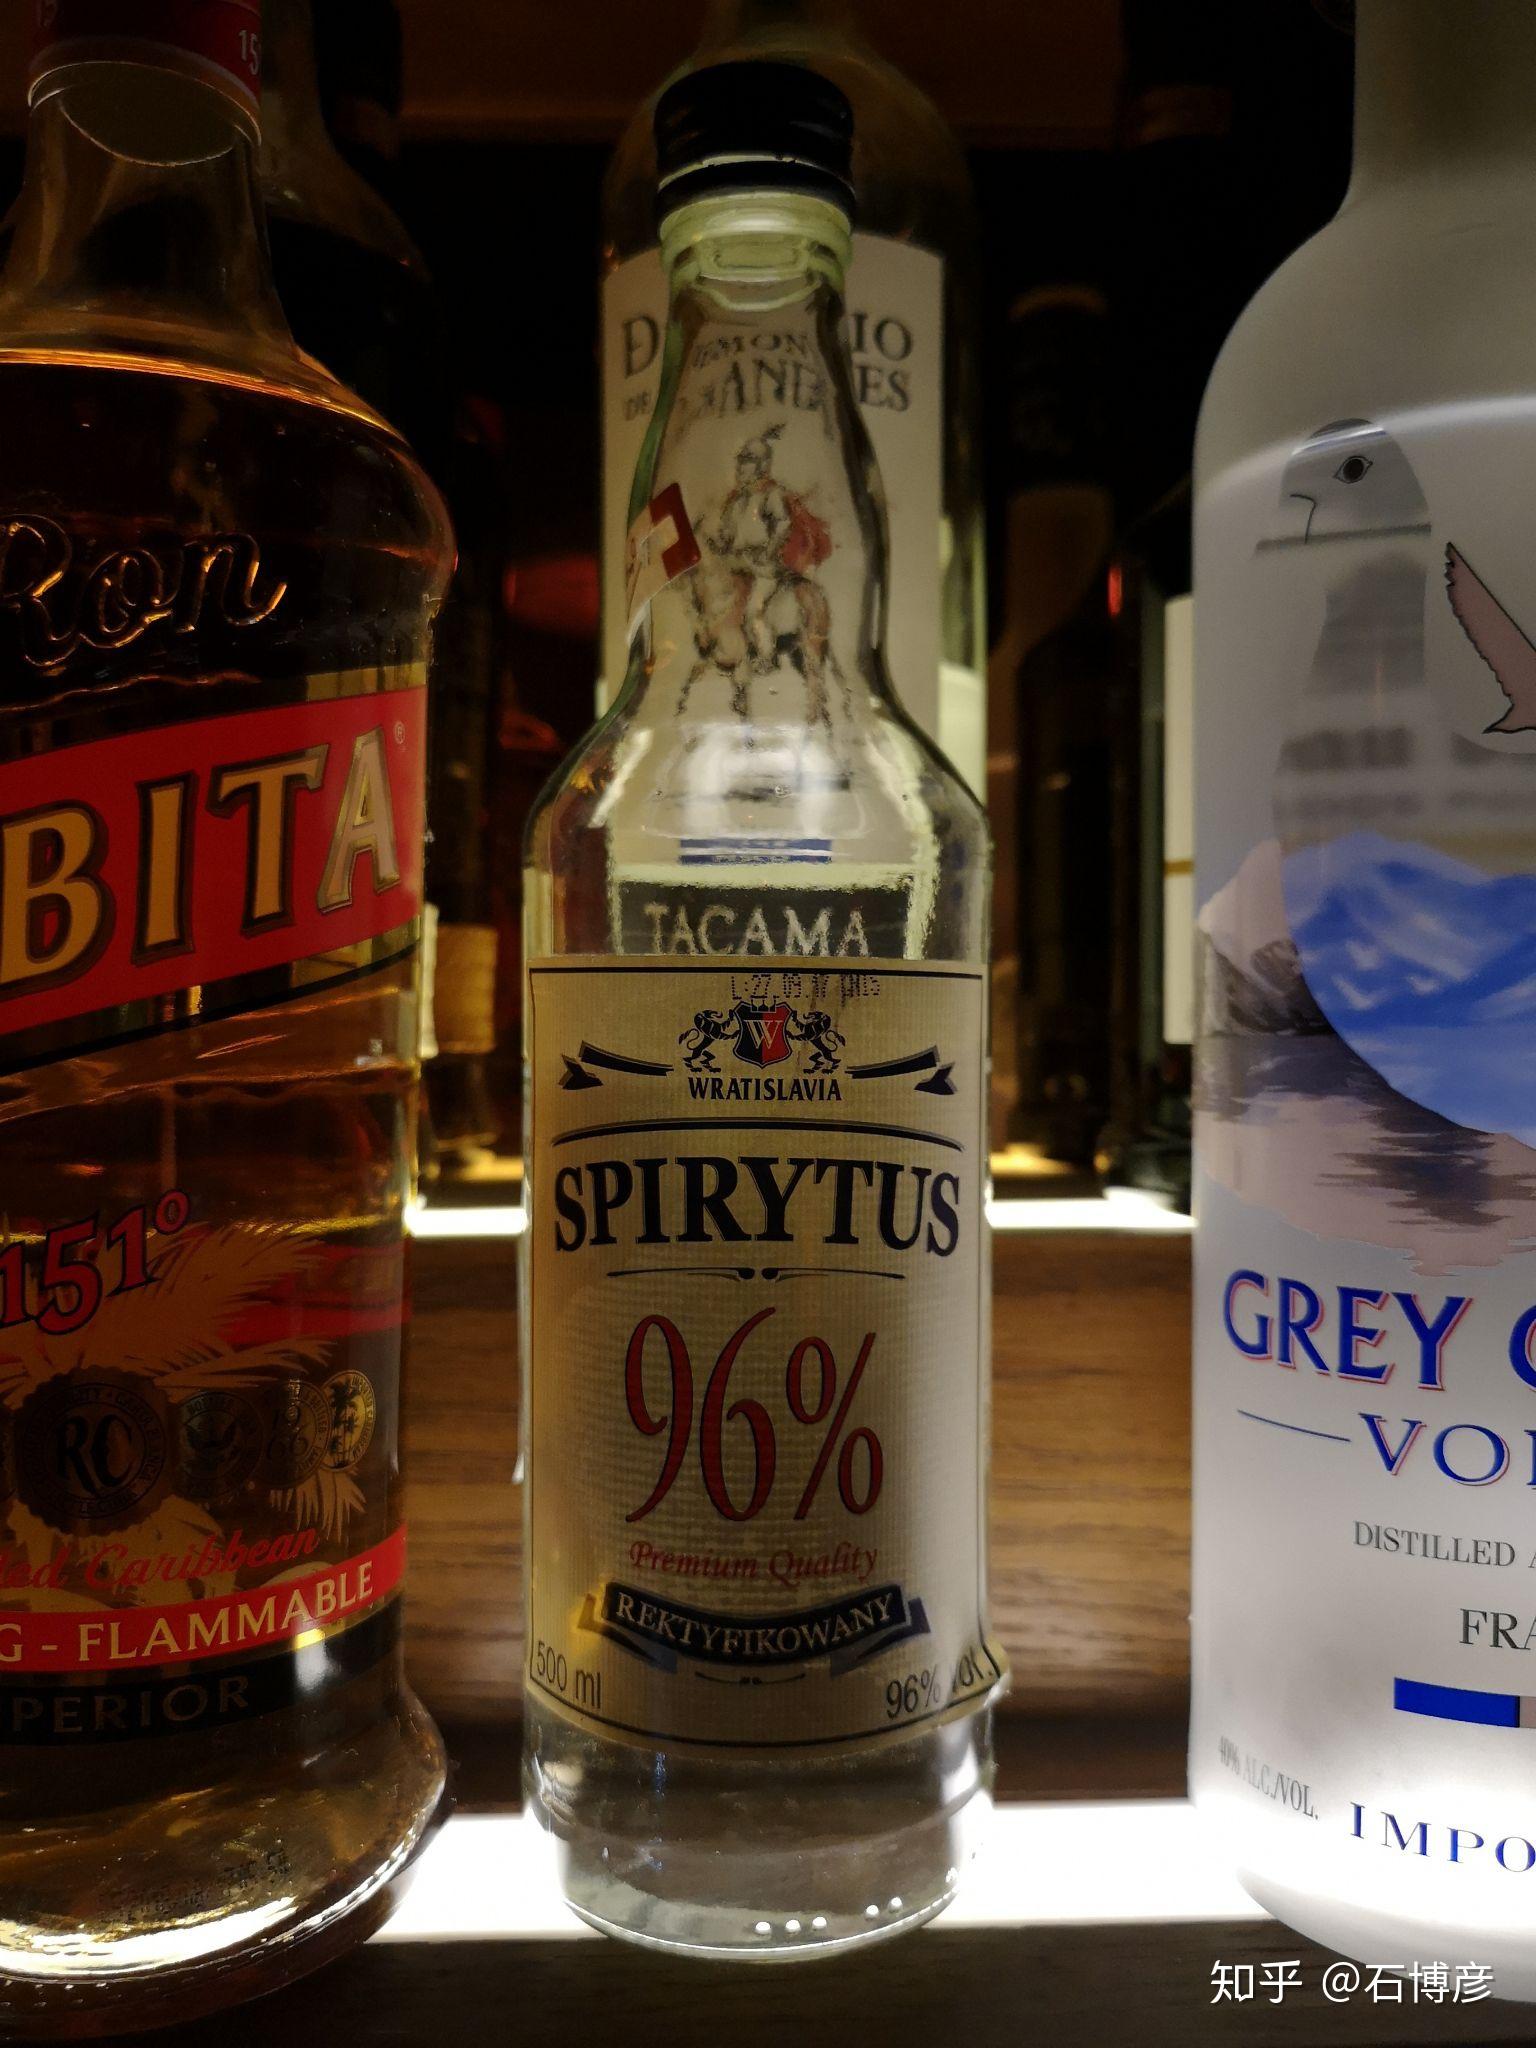 96度的伏特加俄罗斯人都是直接喝还是调酒喝? 